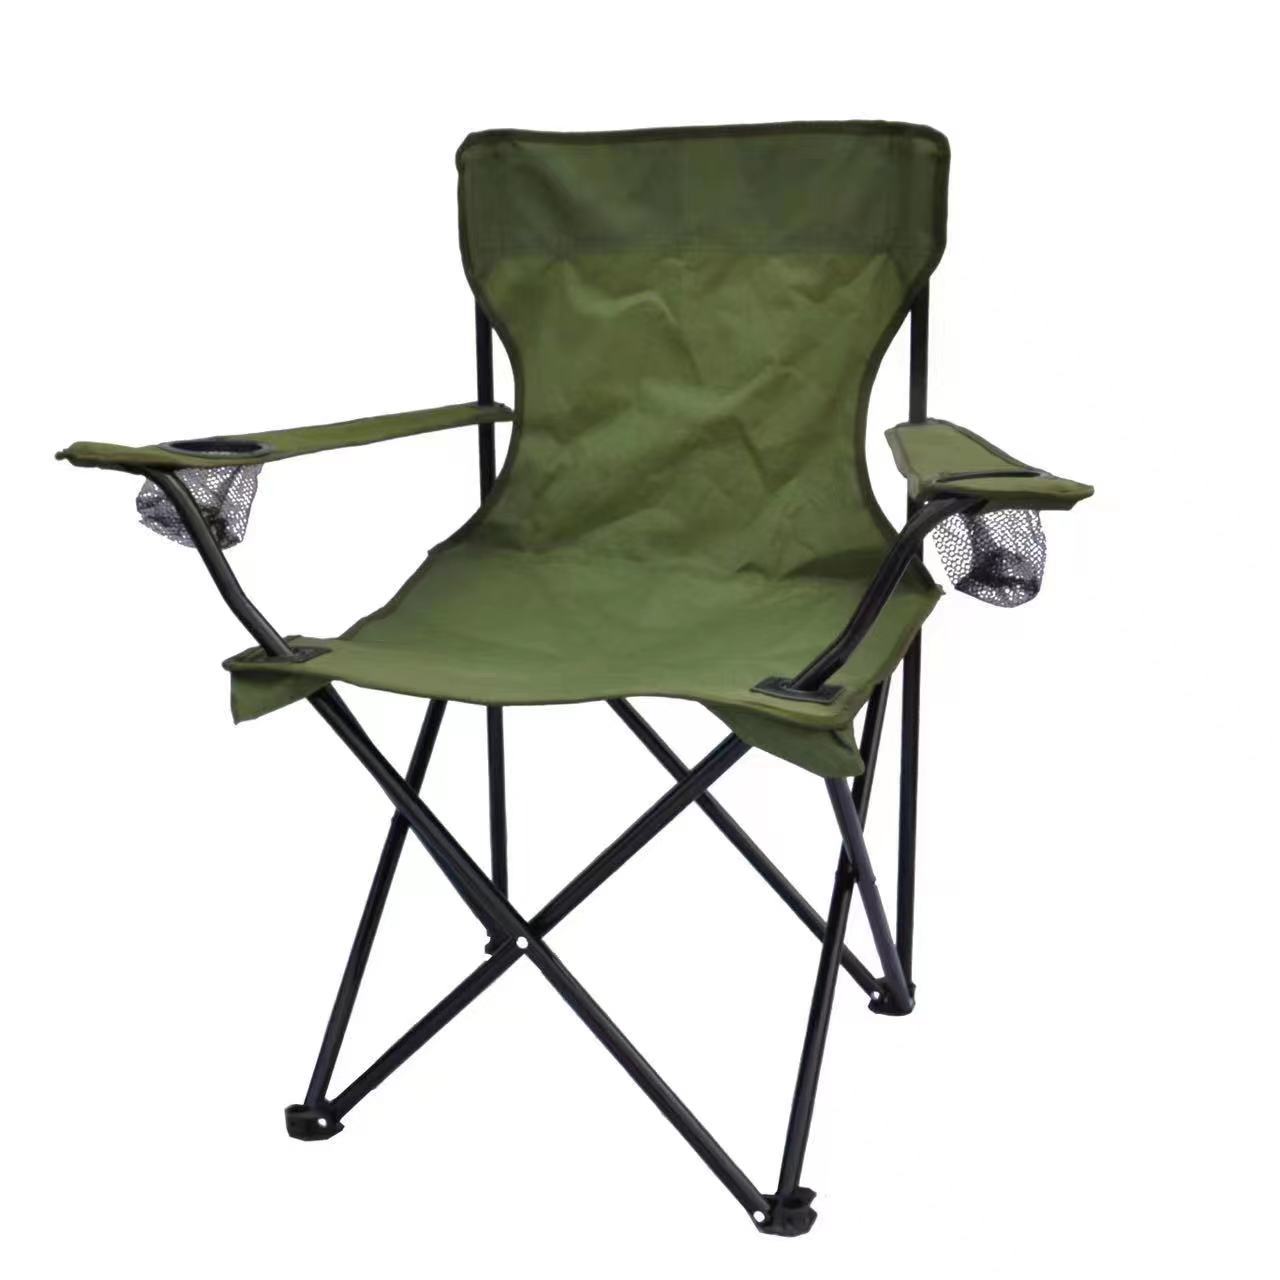 Отдых на природе, кемпинг, кресло для рыбалки, складное пляжное кресло с подлокотниками, портативный ларек для кемпинга, складной стул со спинкой